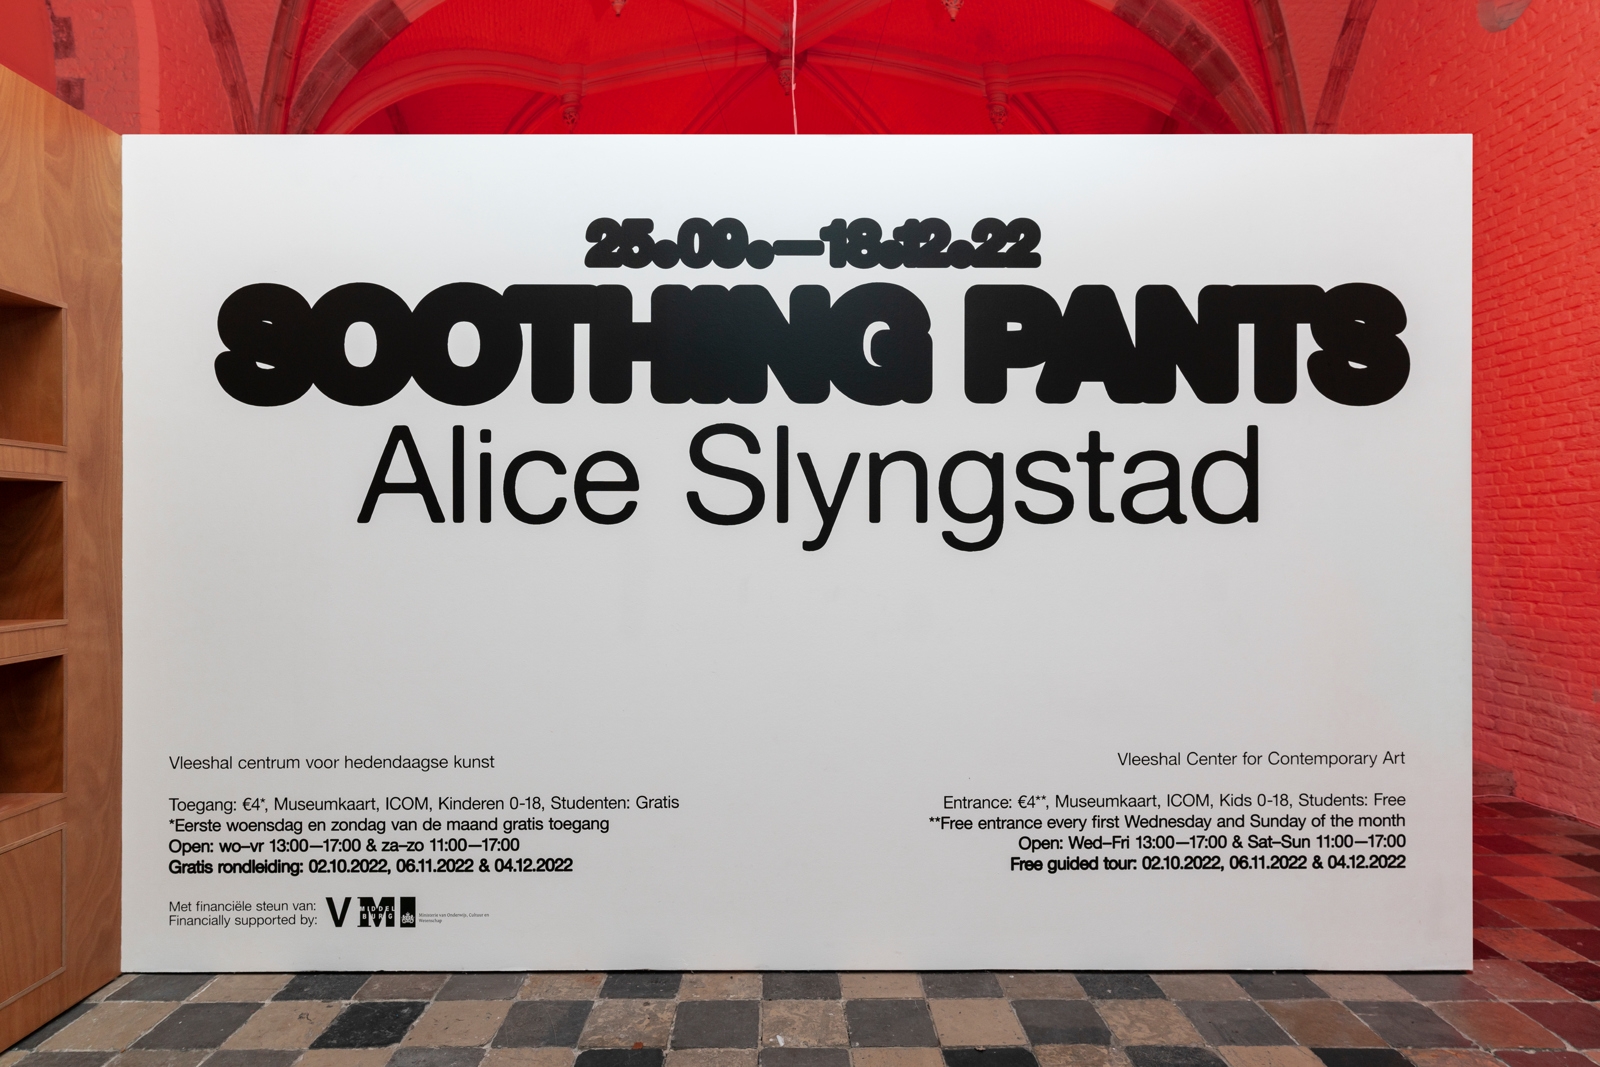 Wall text | Soothing Pants | Vennica Sidibanga Kaseye